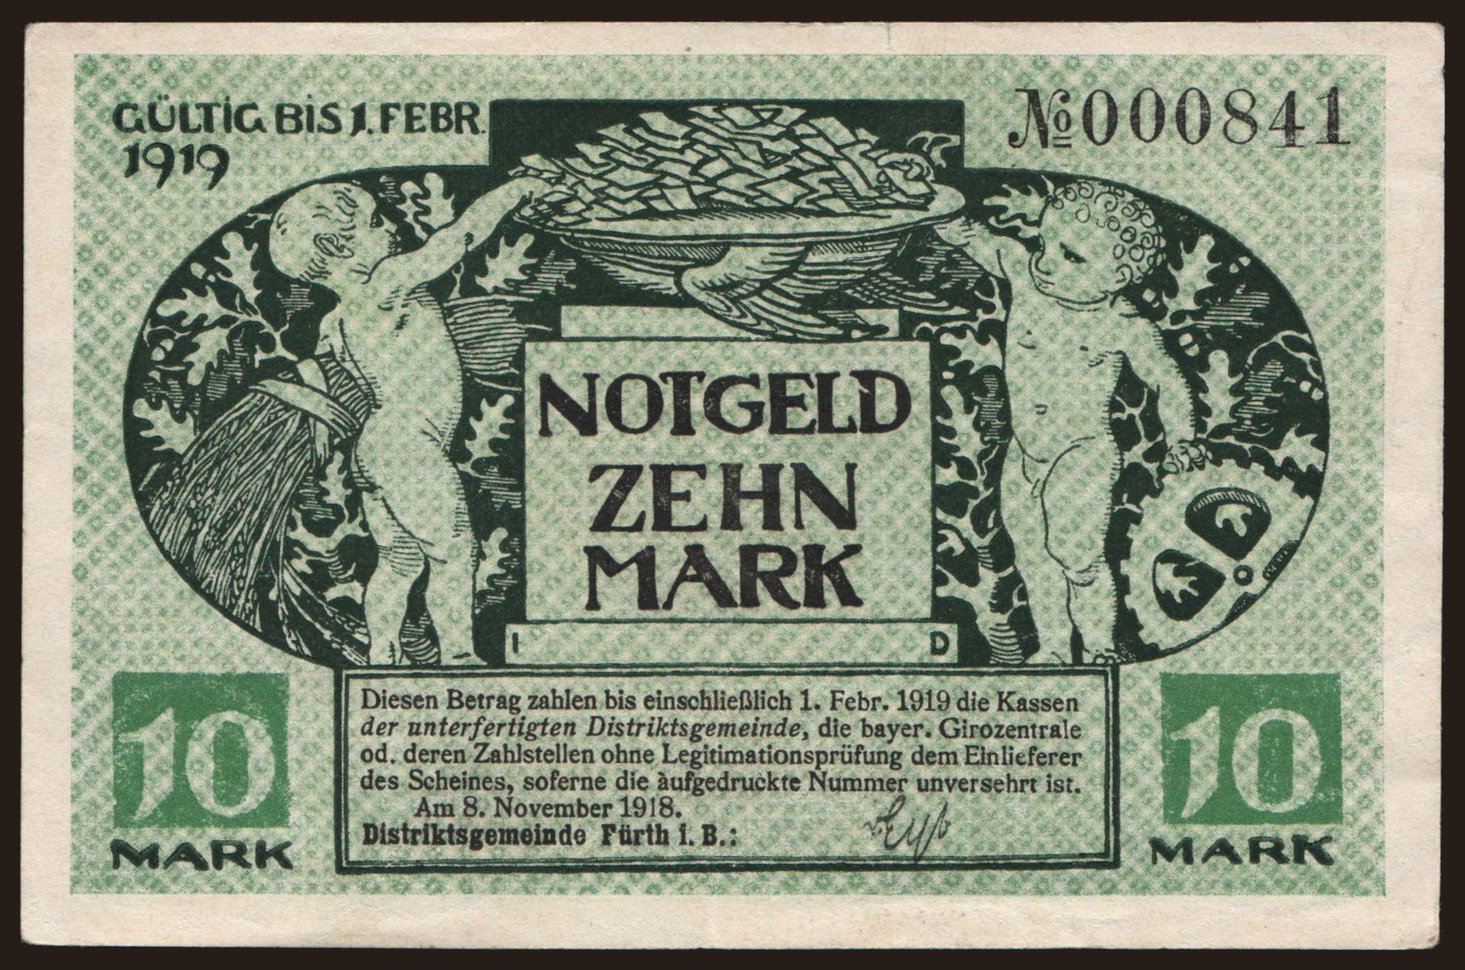 Fürth/ Distriksgemeinde, 10 Mark, 1918